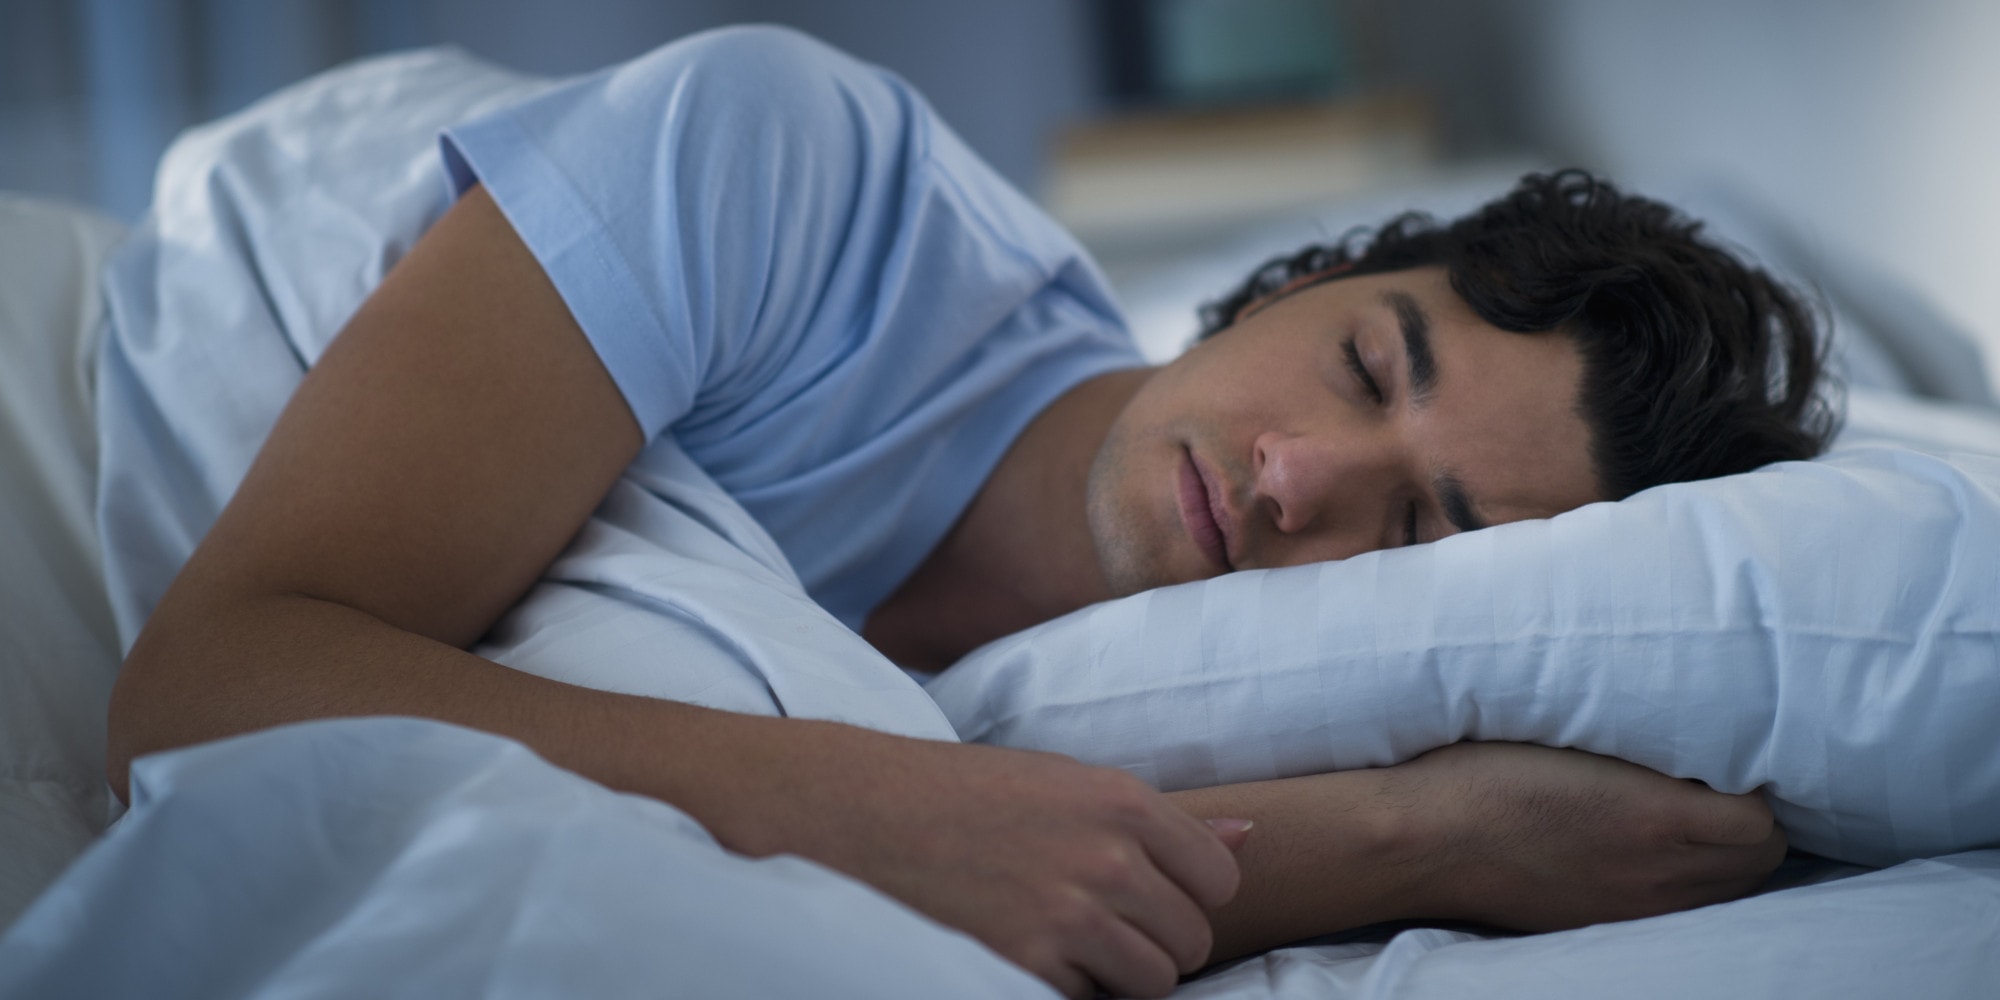 Đảm bảo giấc ngủ đầy đủ để hệ thần kinh được nghỉ ngơi đầy đủ